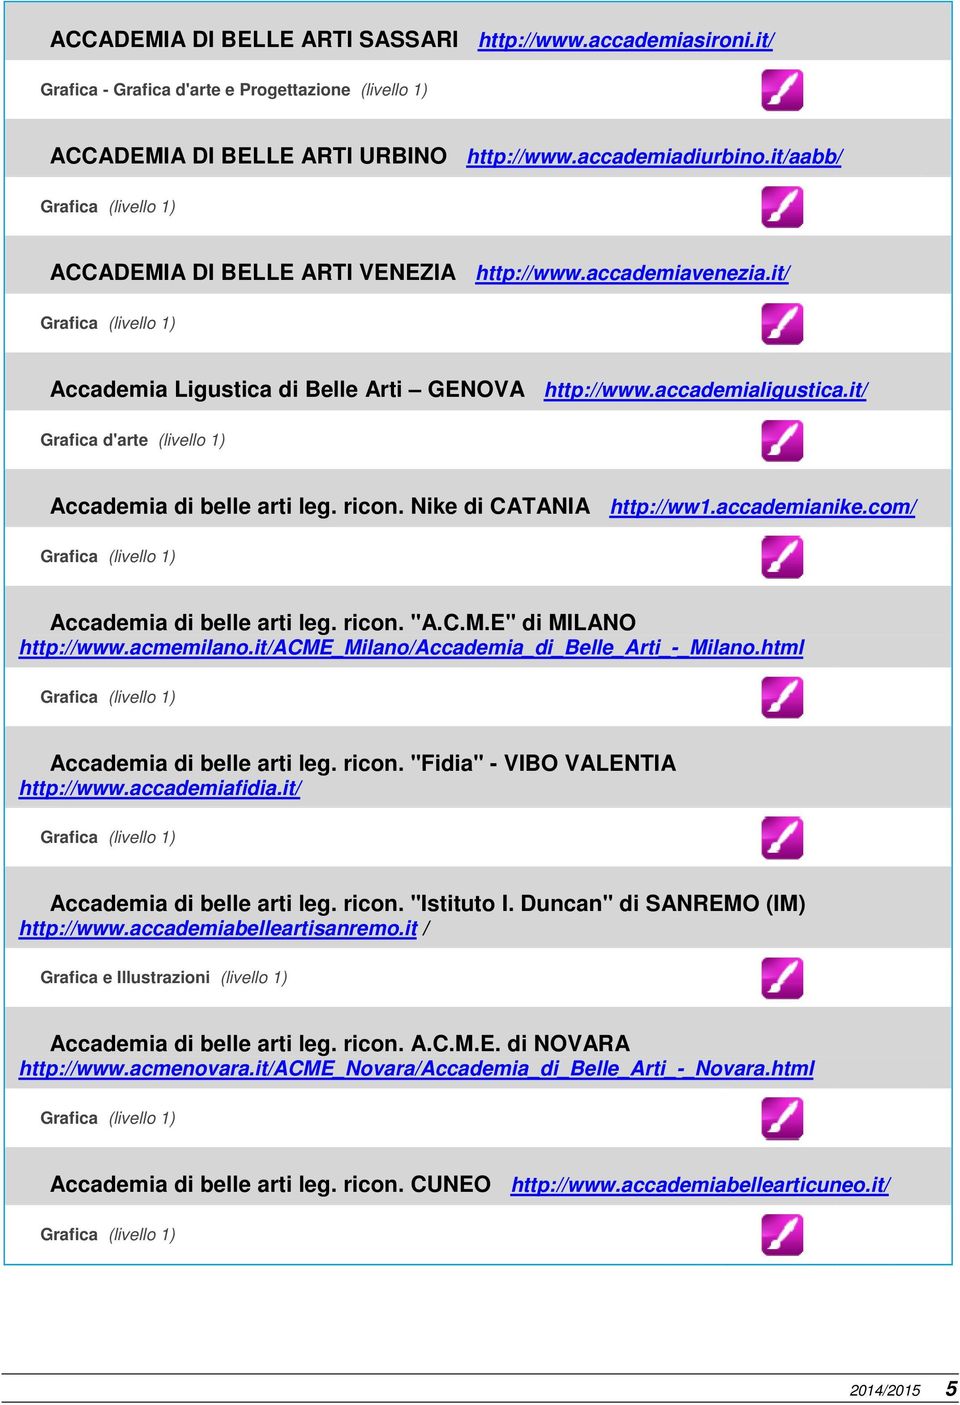 Nike di CATANIA http://ww1.accademianike.com/ Accademia di belle arti leg. ricon. "A.C.M.E" di MILANO http://www.acmemilano.it/acme_milano/accademia_di_belle_arti_-_milano.